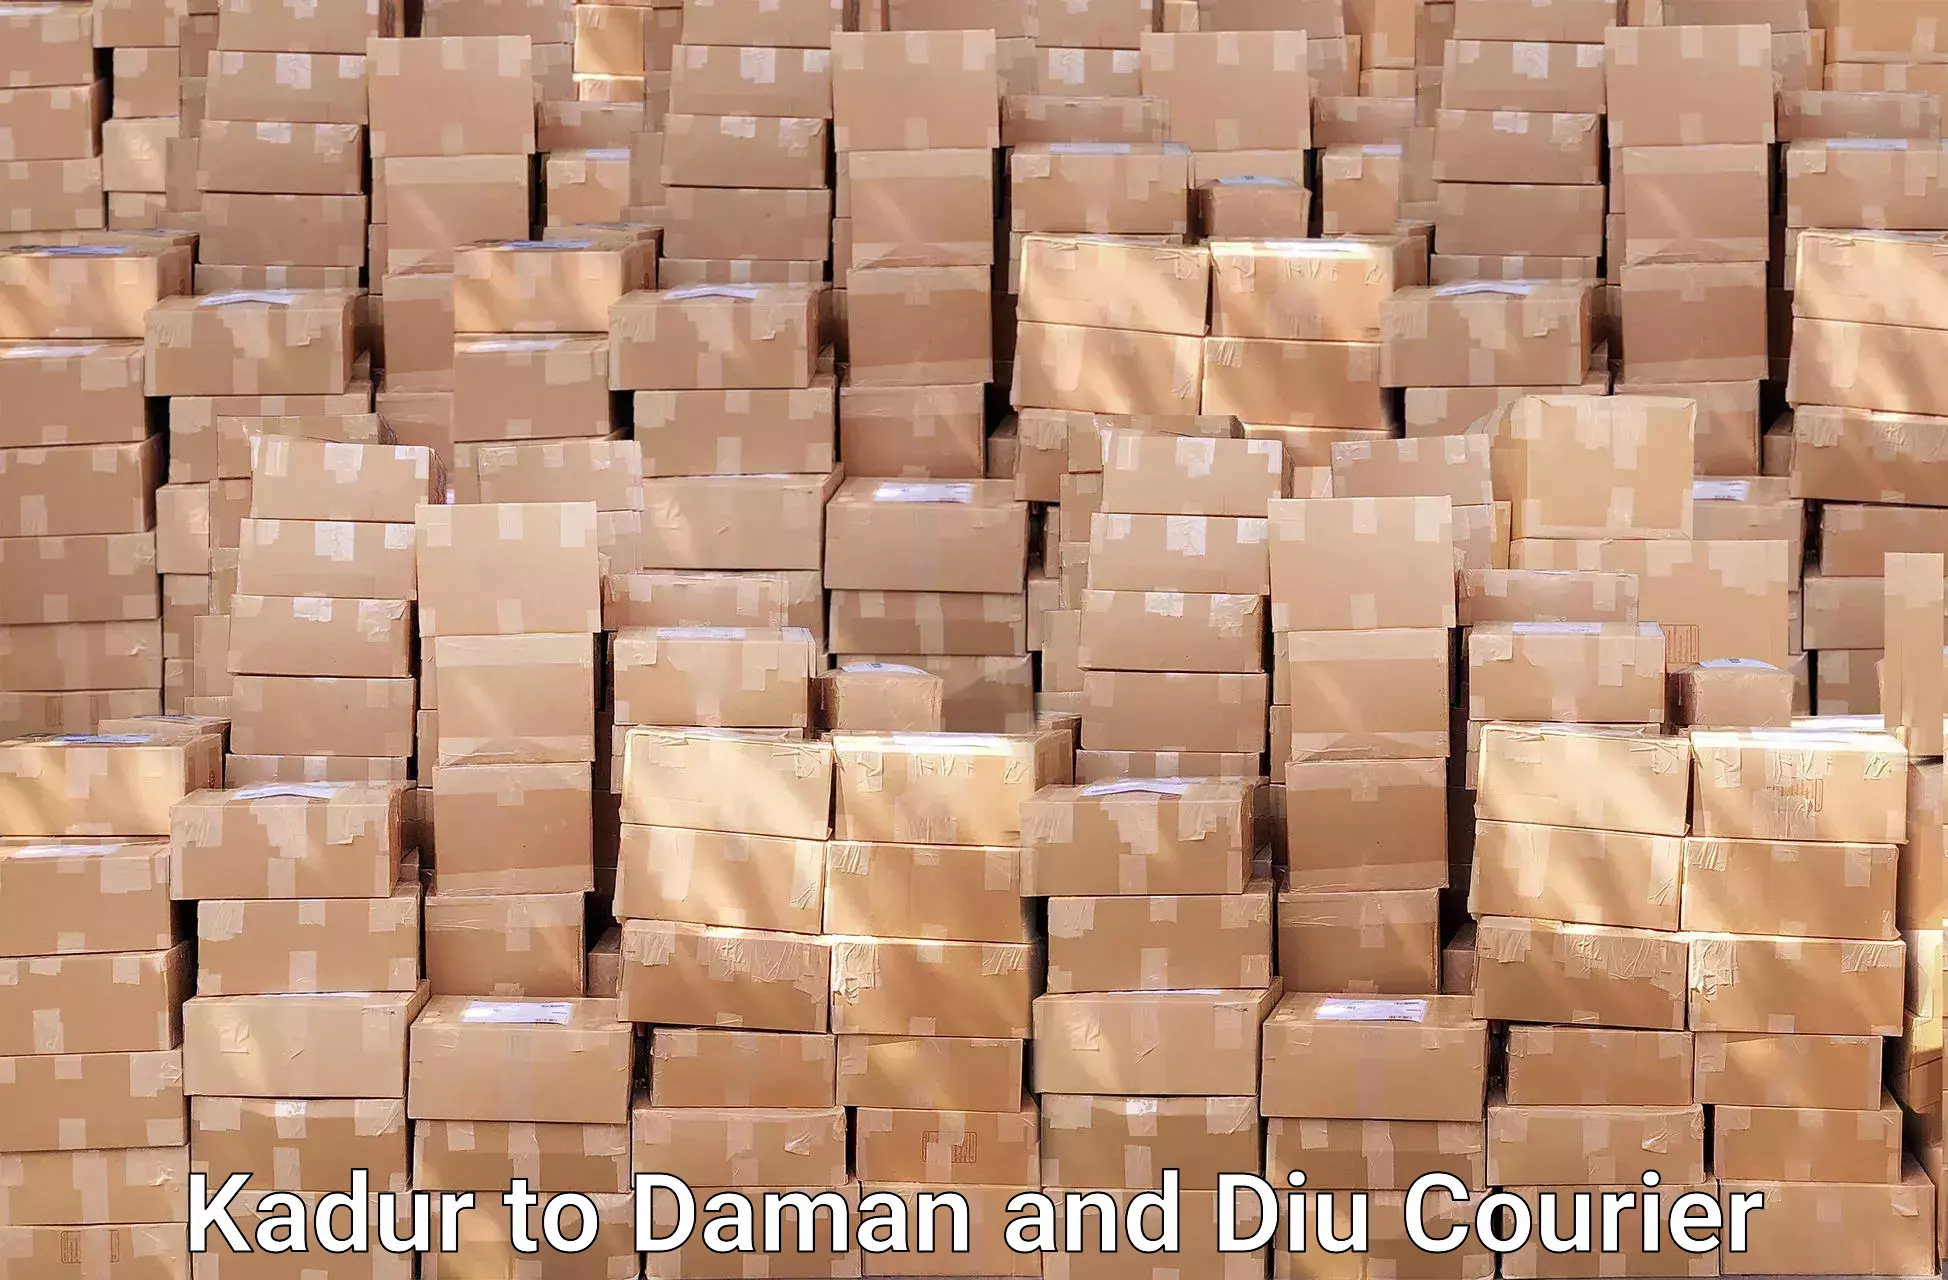 Comprehensive moving assistance Kadur to Daman and Diu